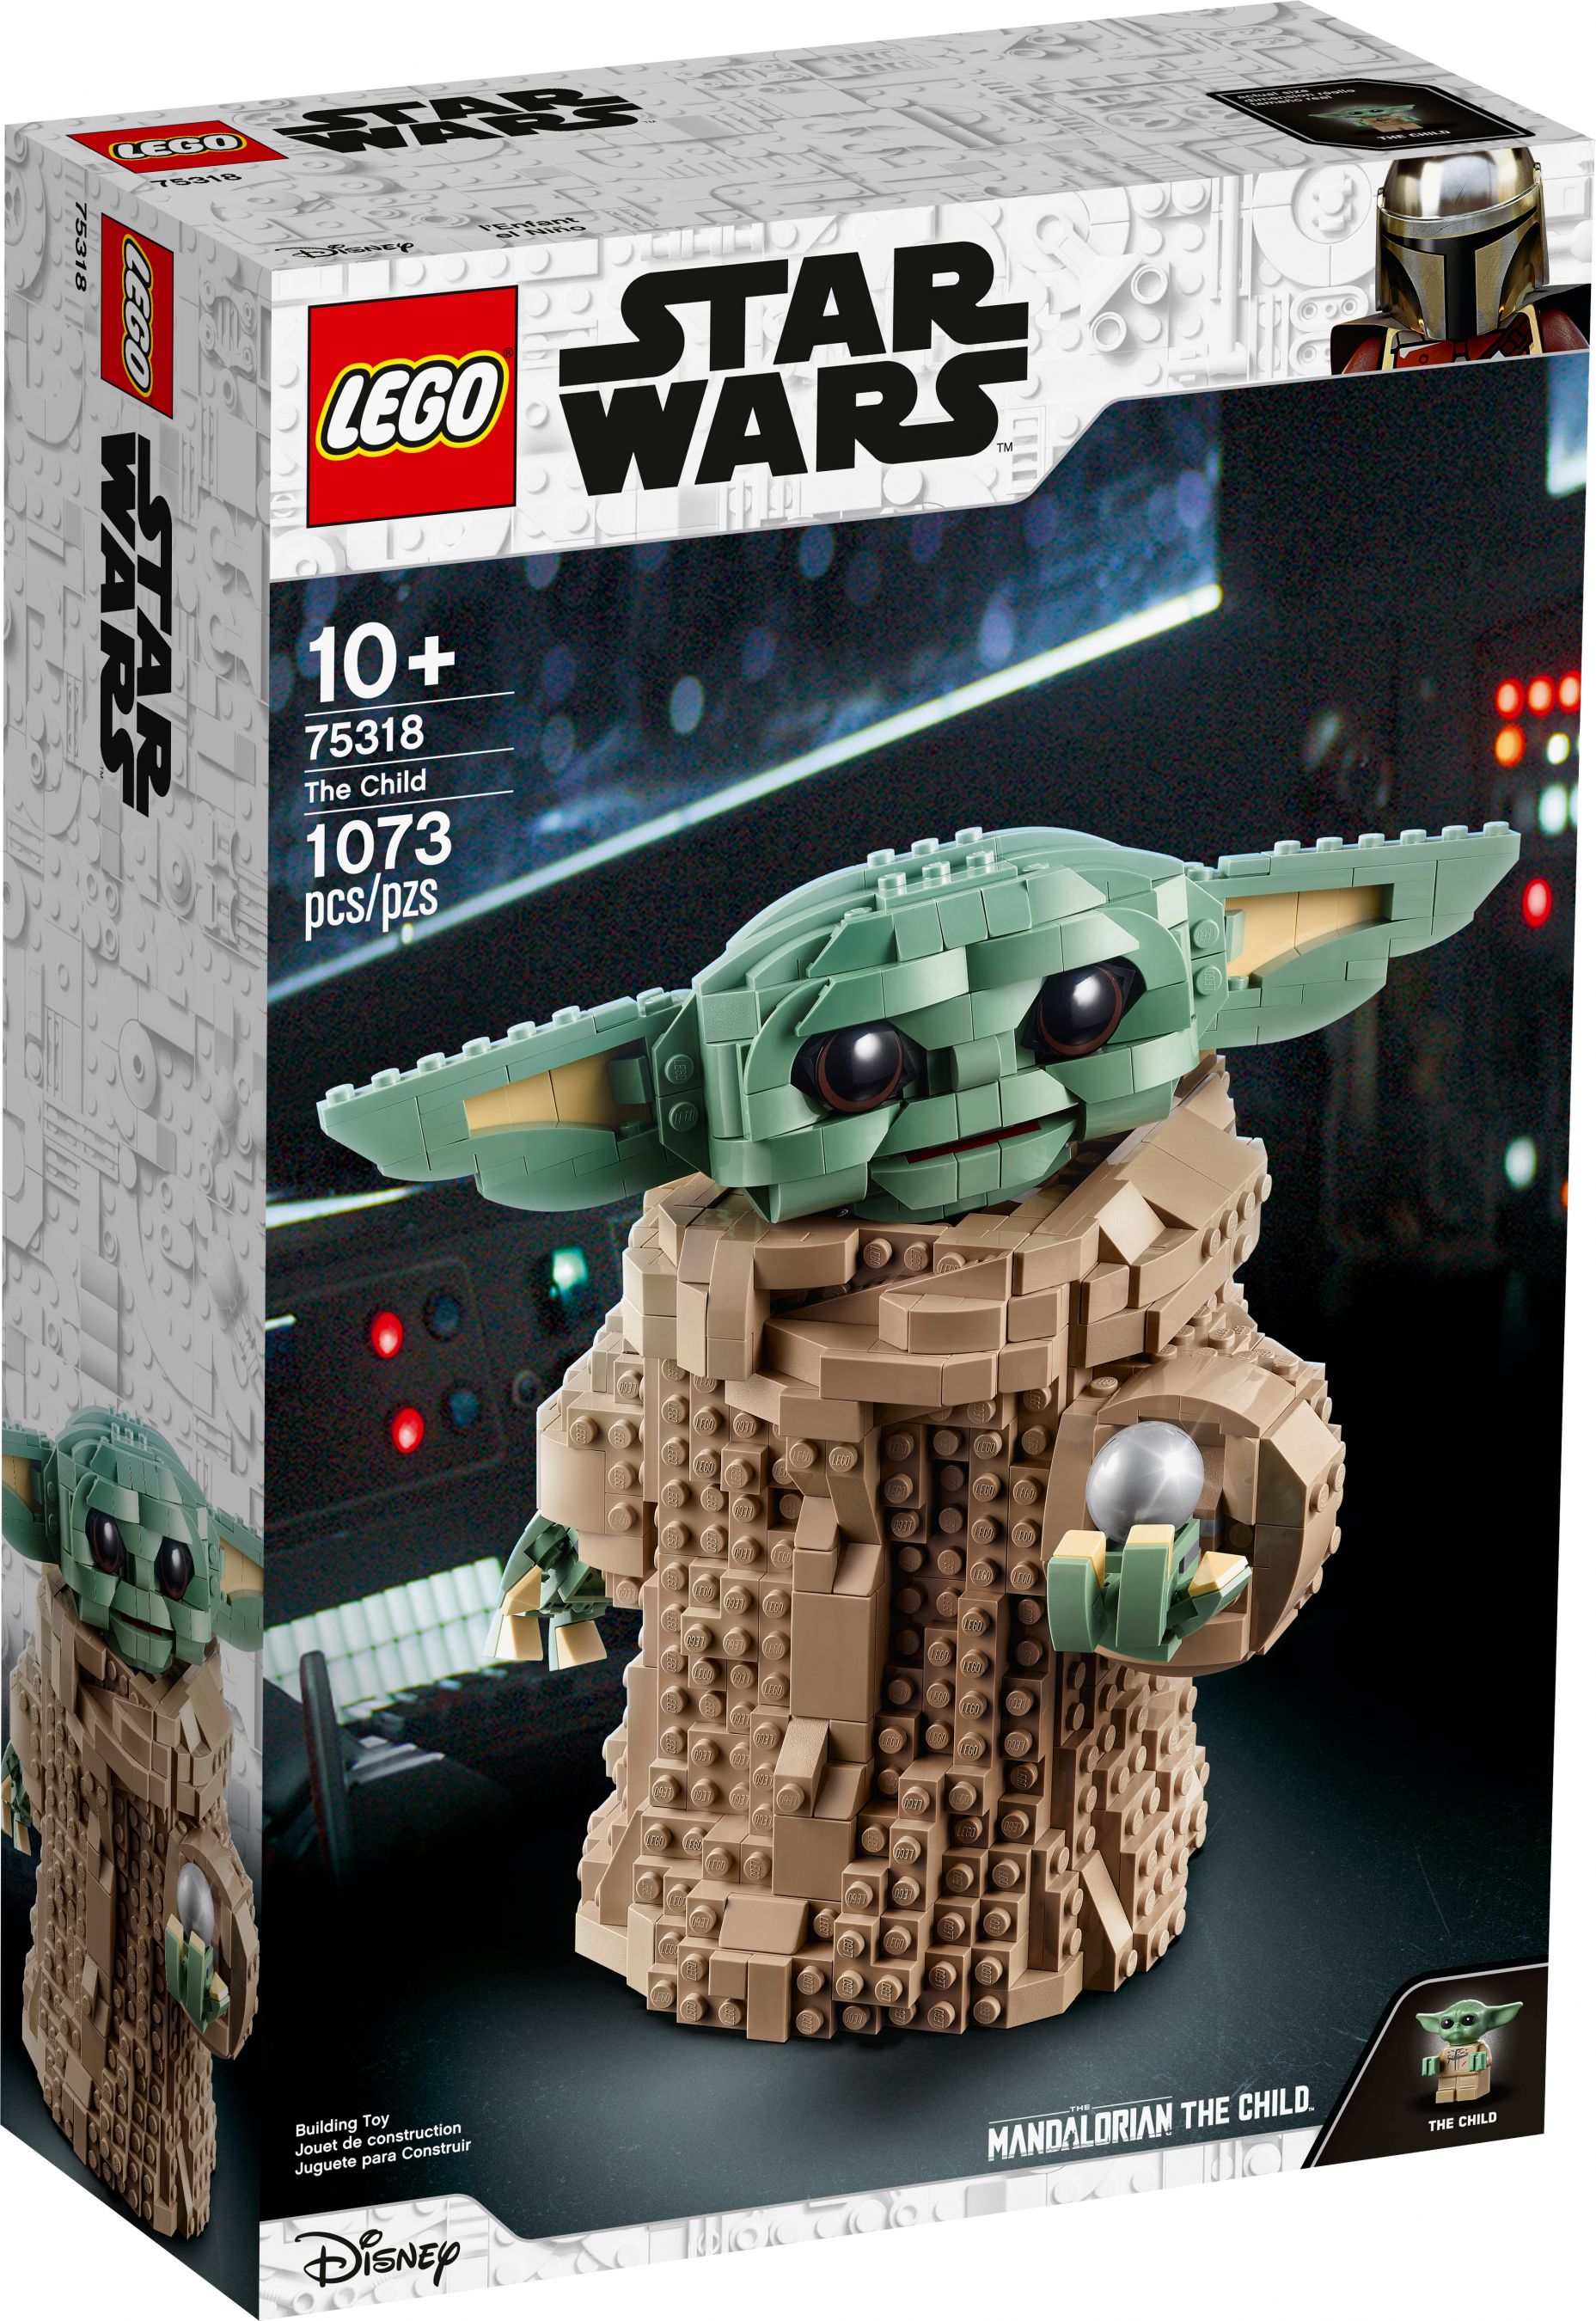 LEGO Star Wars 75318 Das Kind LEGO_75318_alt1.jpg